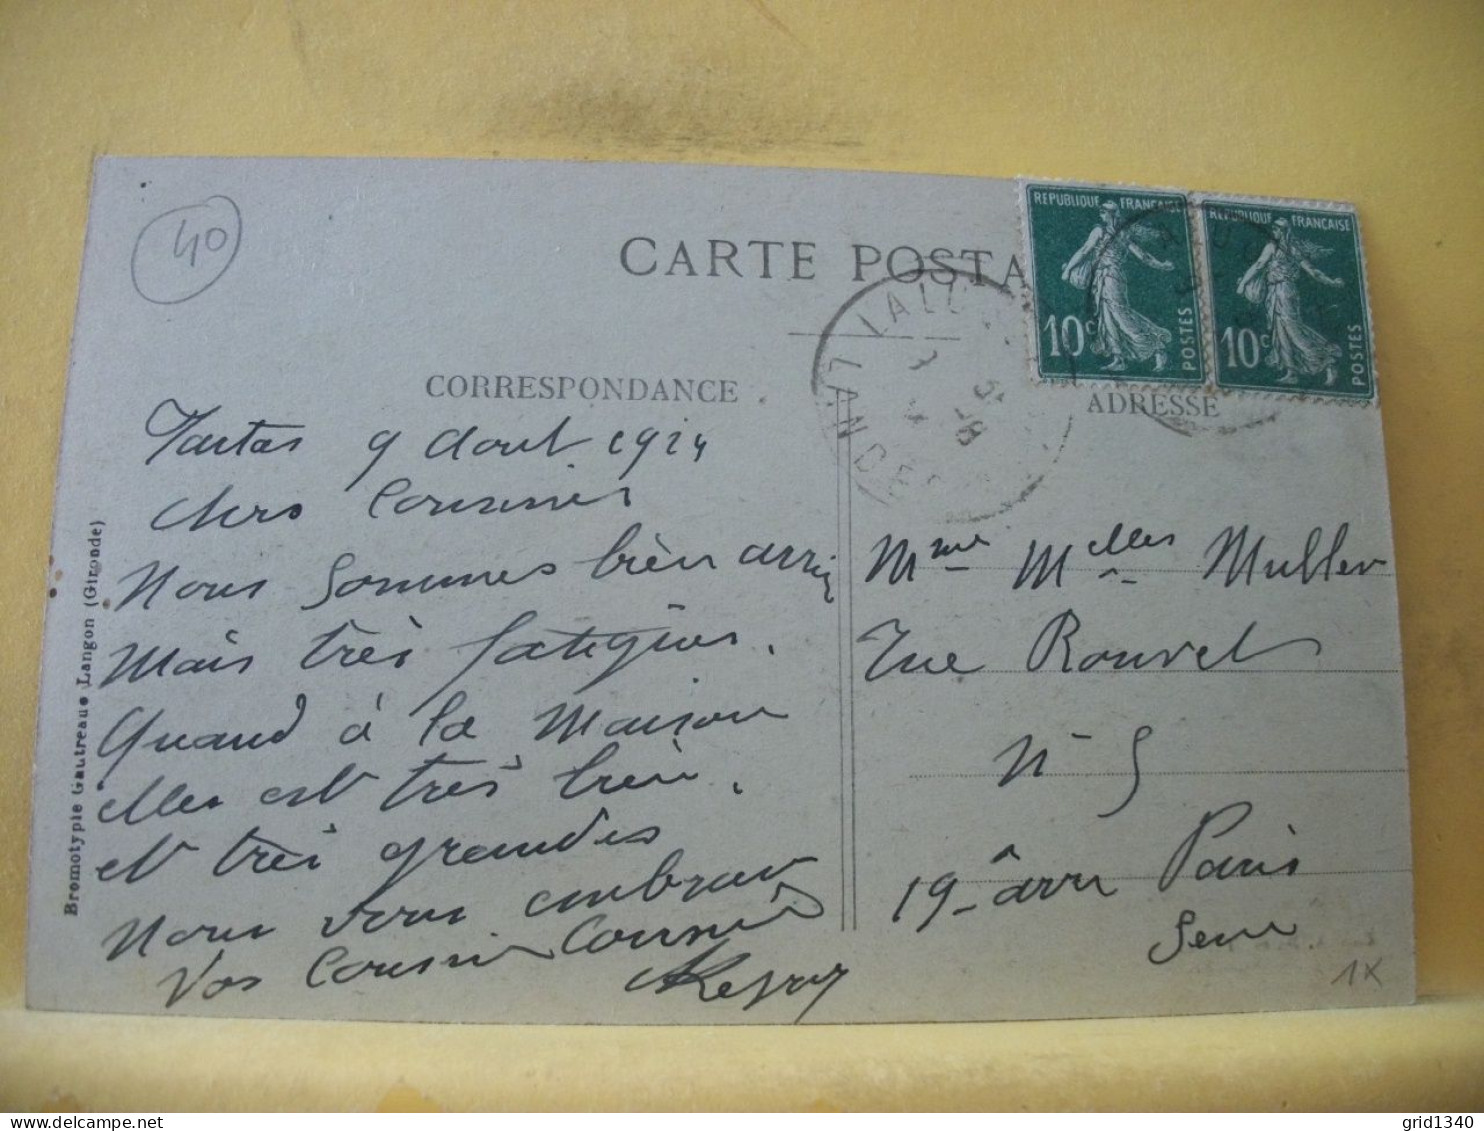 40 3261 CPA 1924 - AUTRE VUE LEGENDE DIFFERENTE N° 2 - 40 TARTAS - LA POSTE - ANIMATION - Postal Services